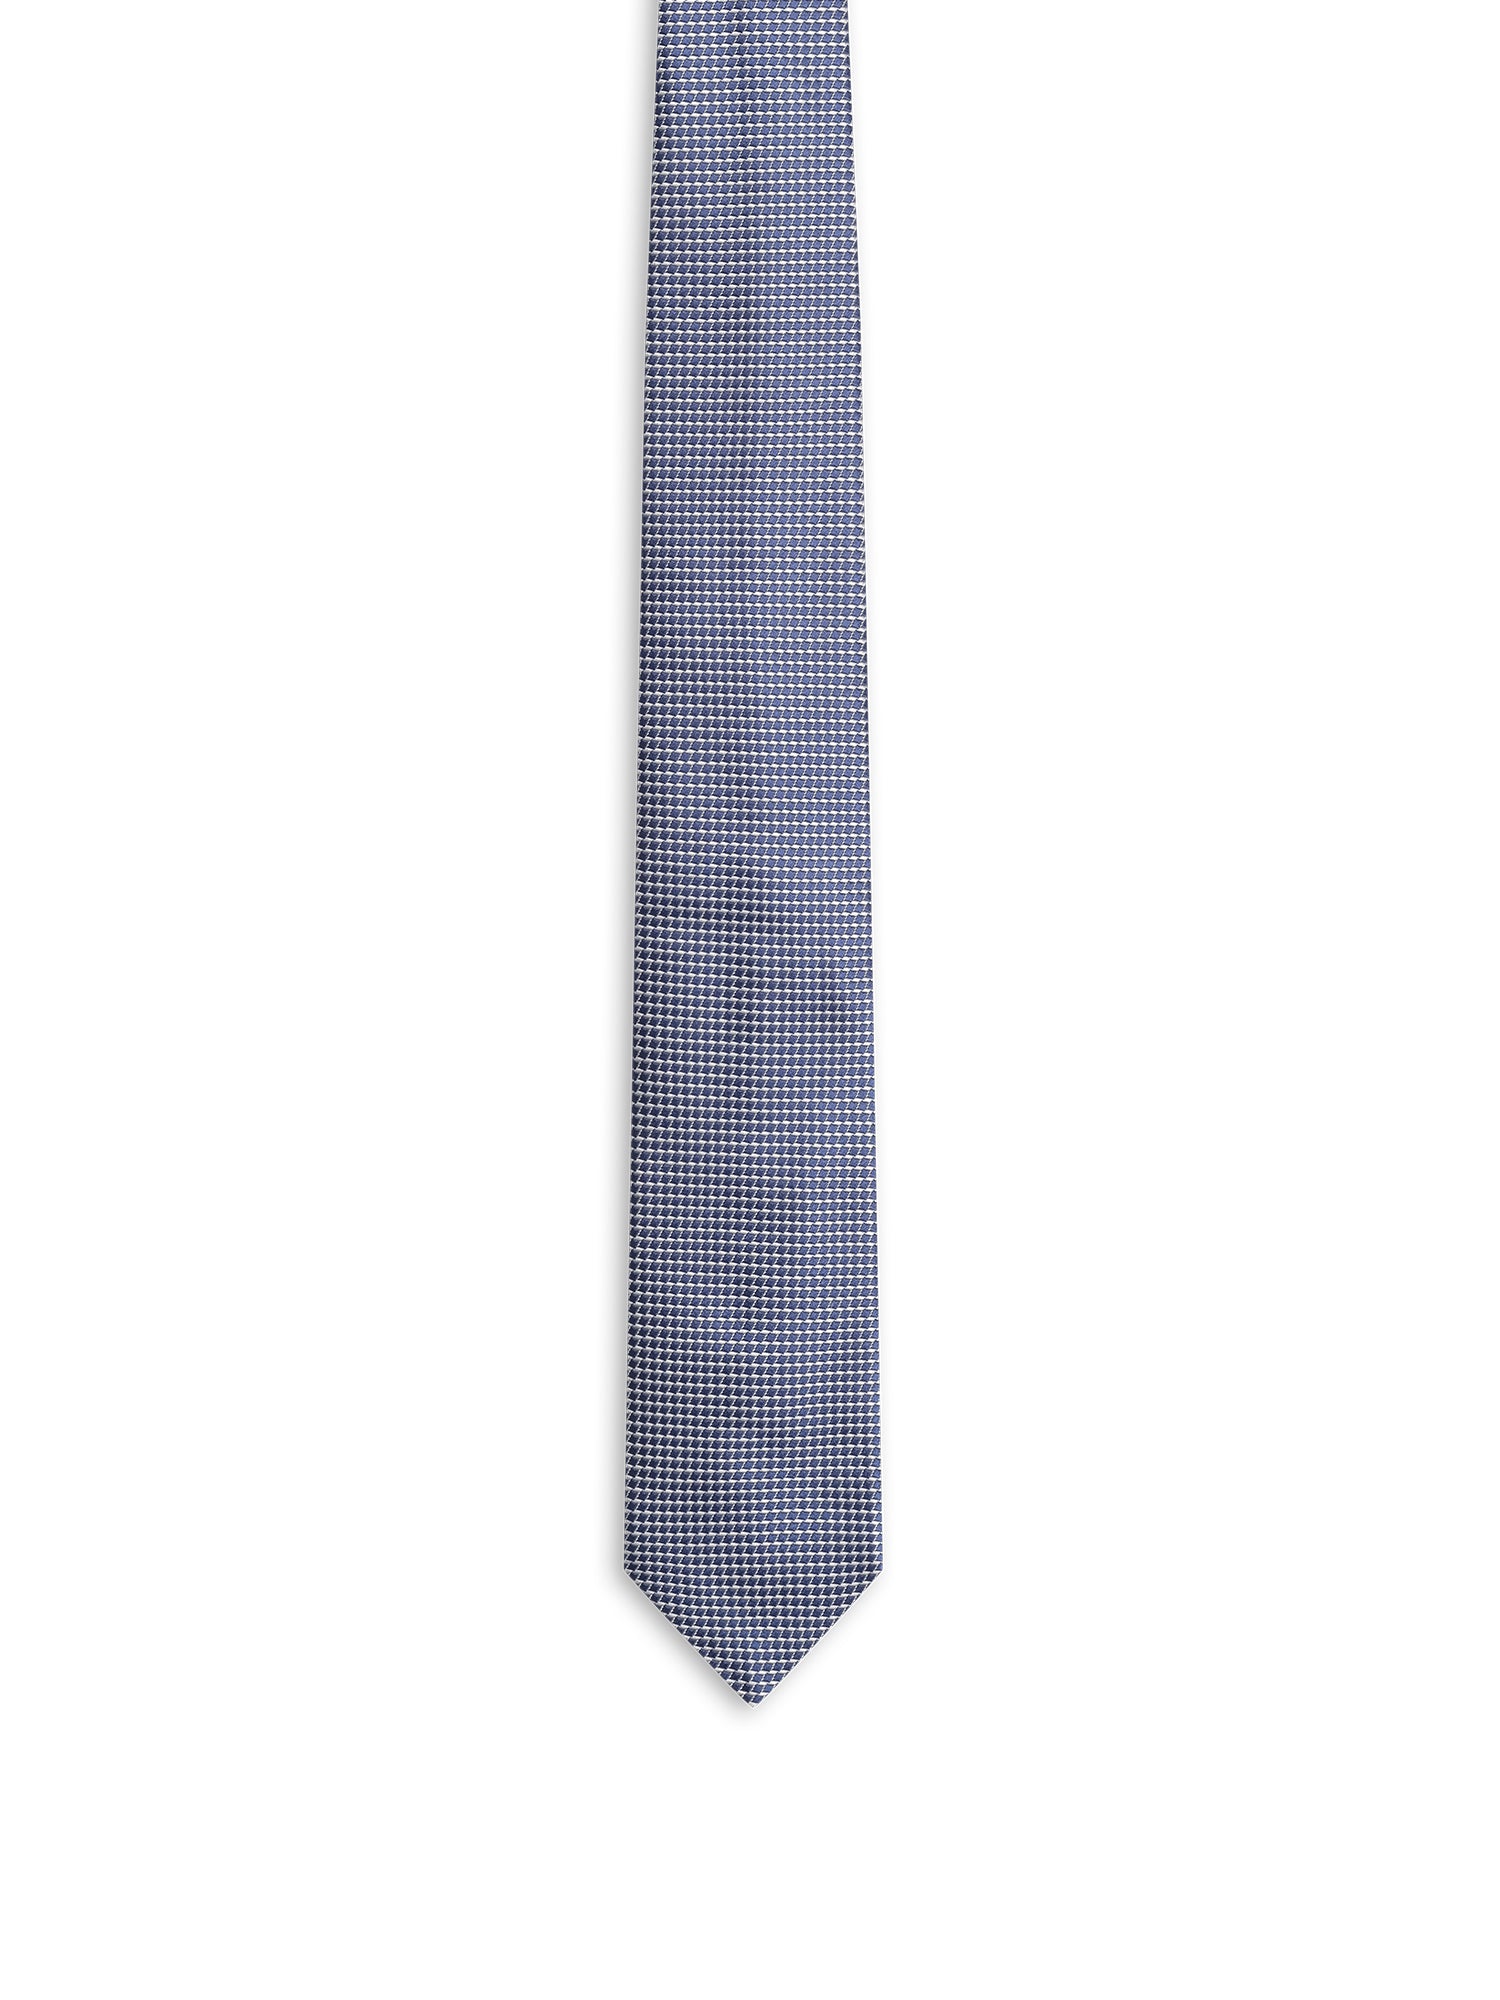 Donatello Tie